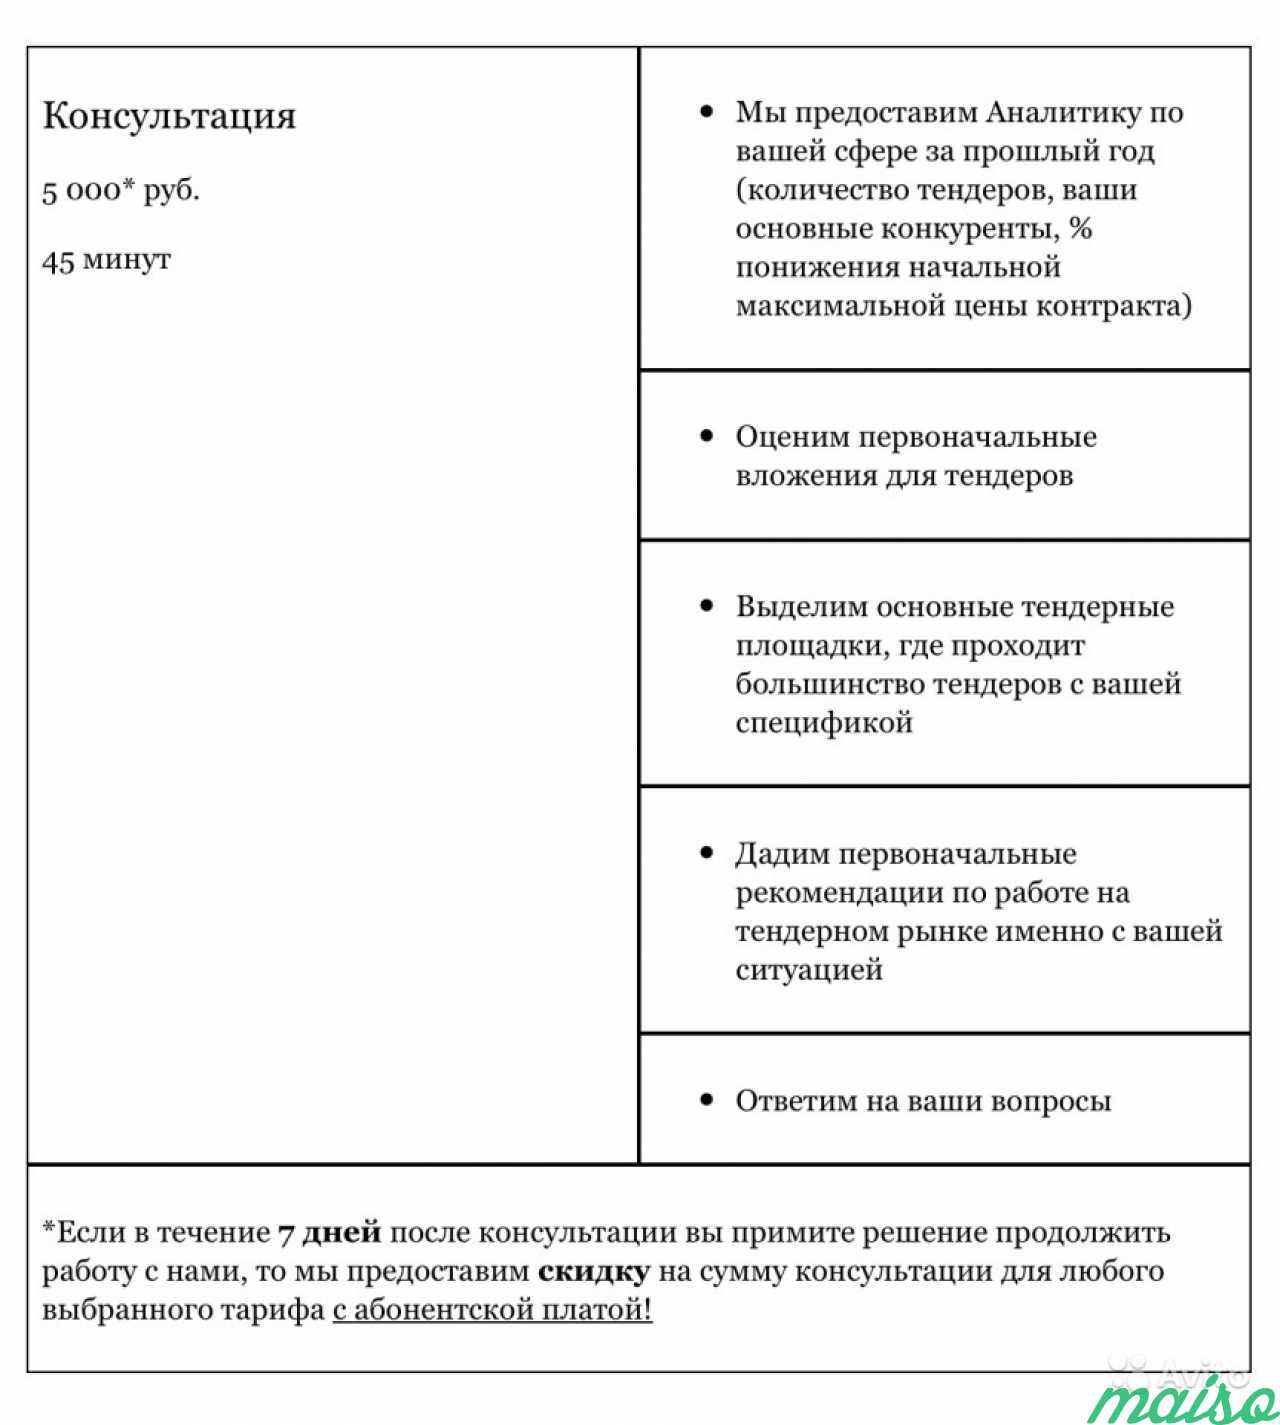 Тендеры - возможности рынка в Санкт-Петербурге. Фото 2